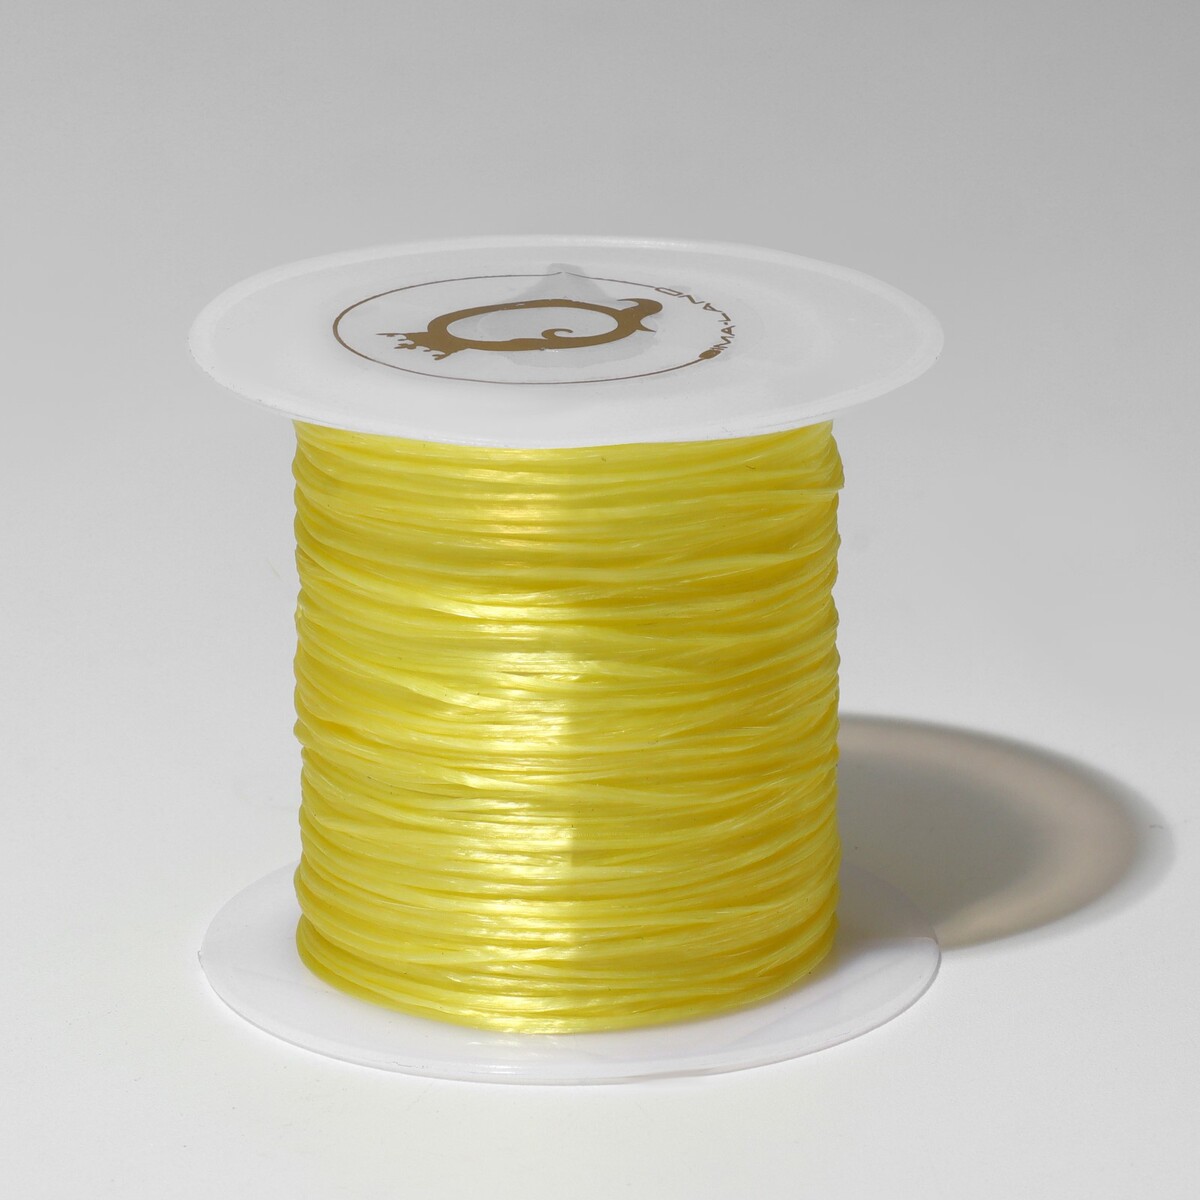 Нить силиконовая (резинка) d=0.5мм, l=10м (прочность 2250 денье), цвет желтый Queen fair